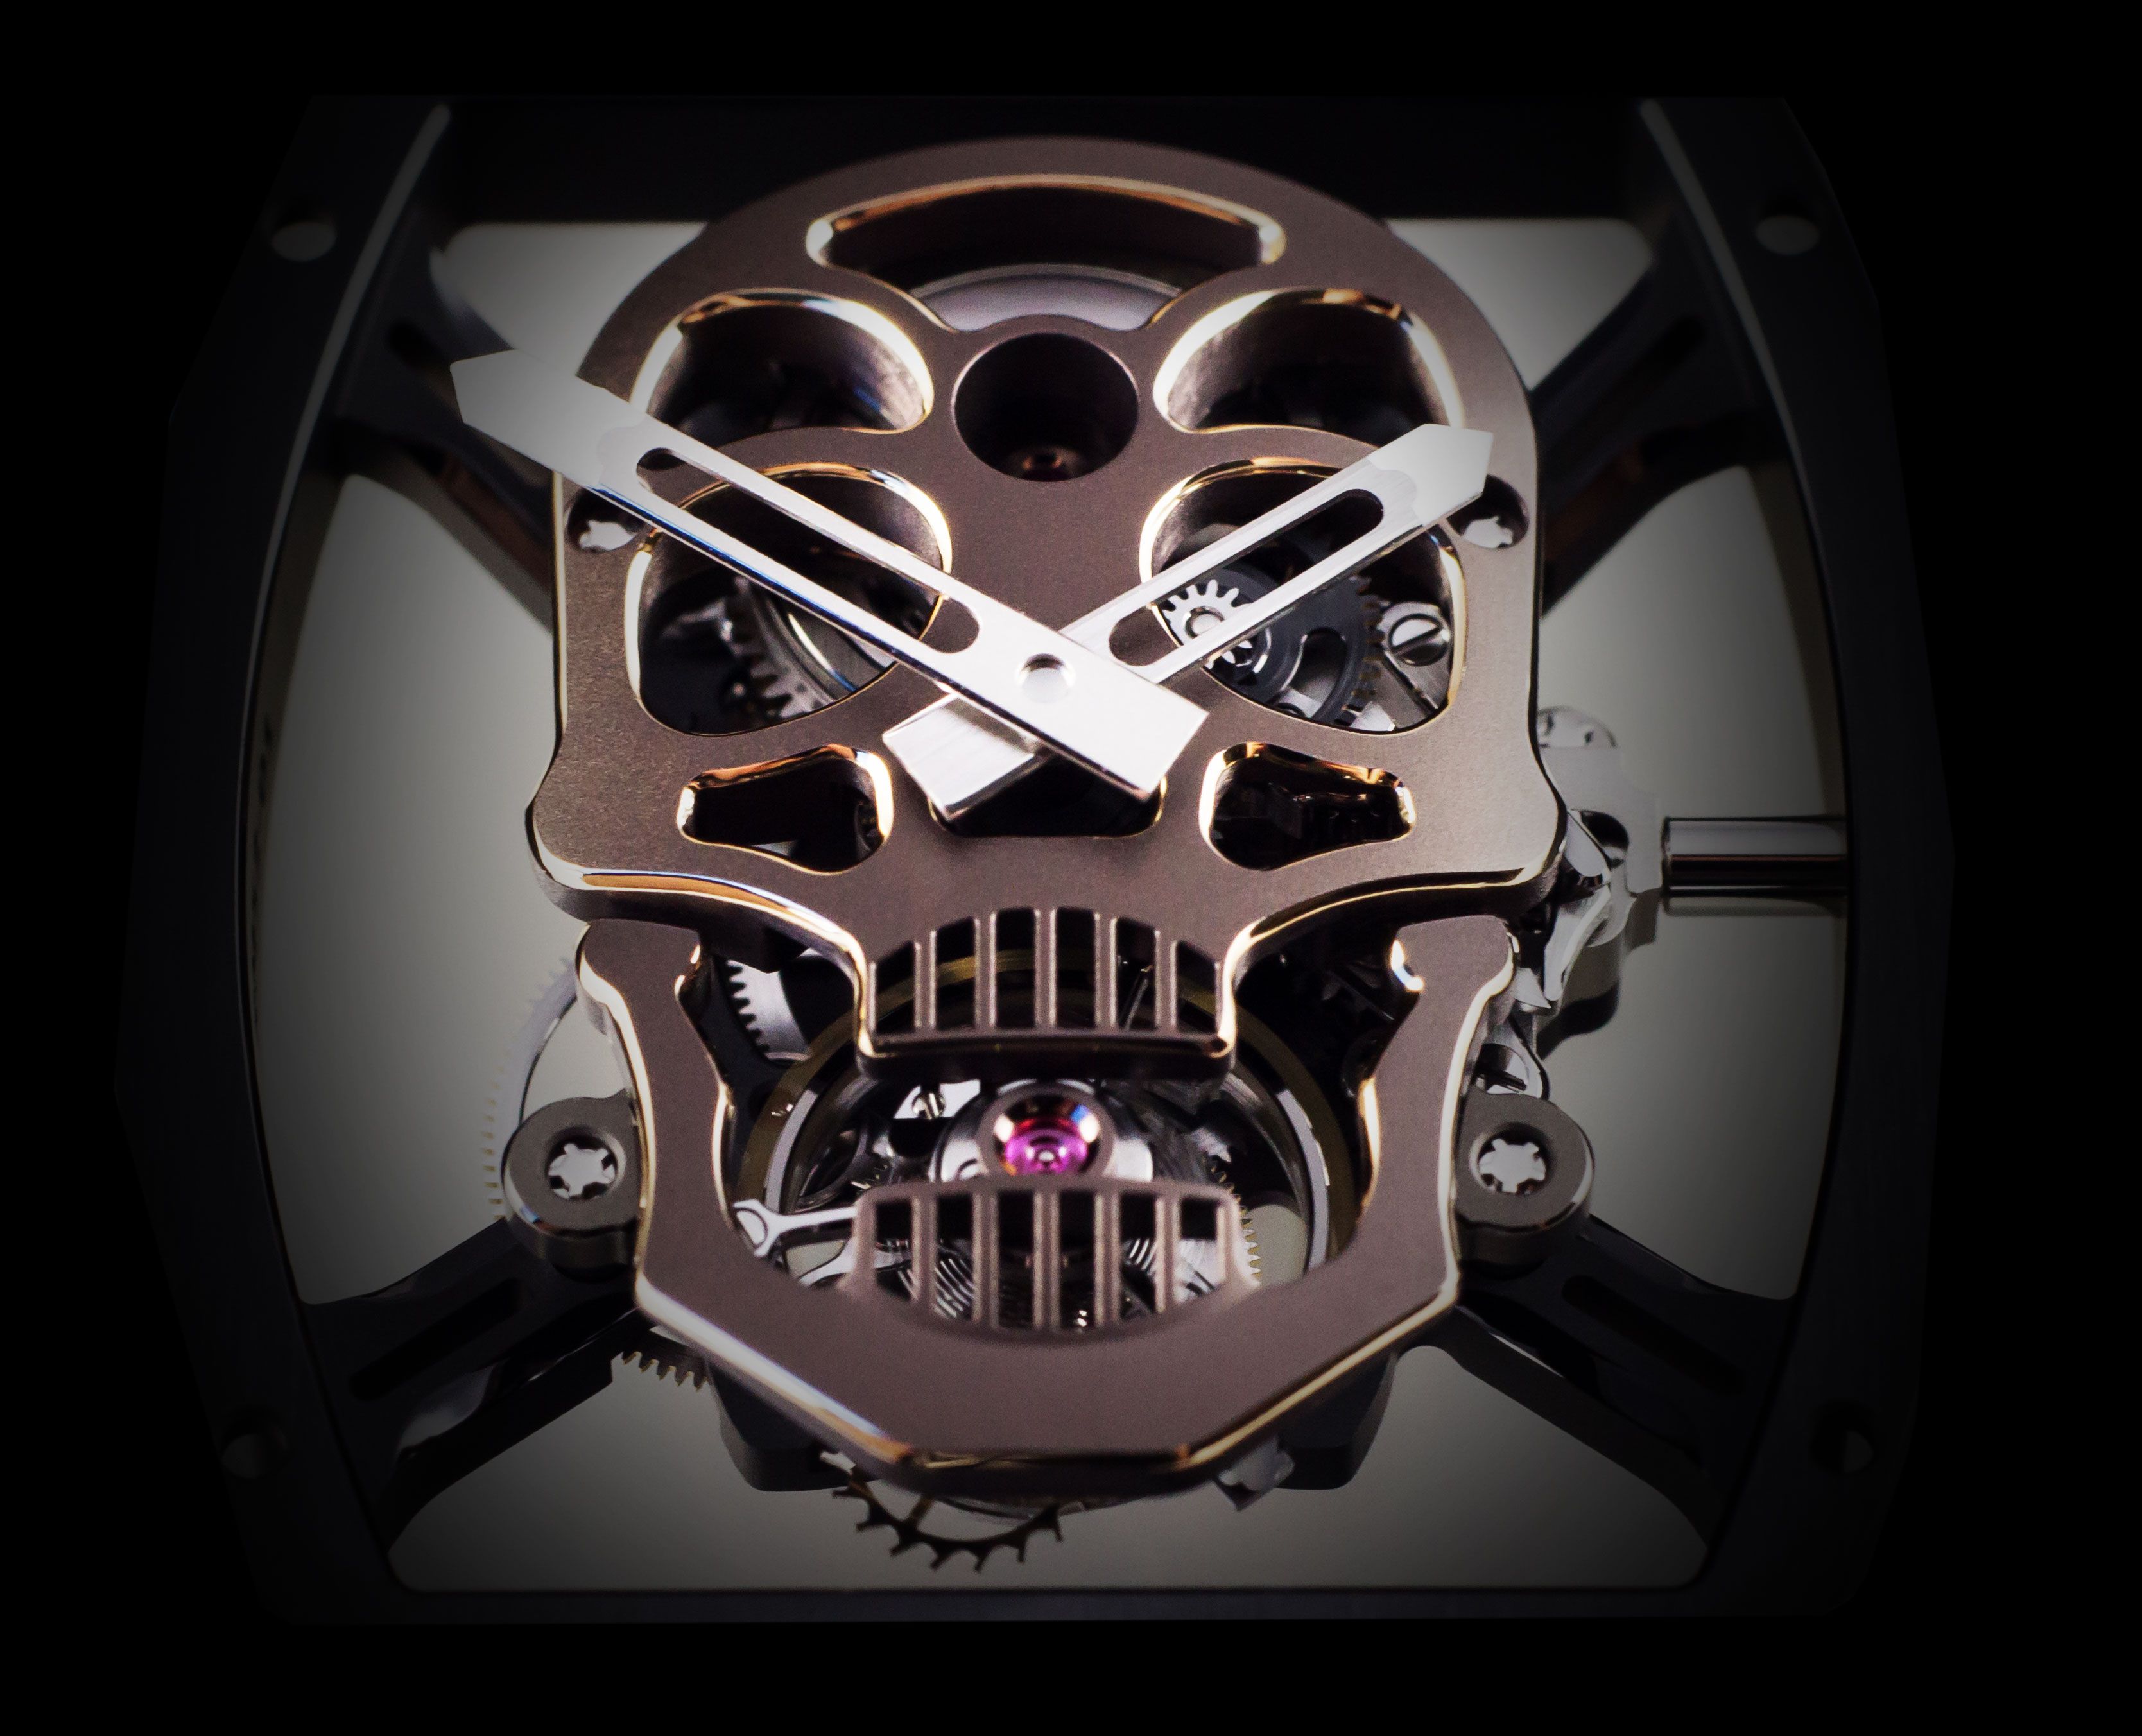 Authentic Replica Rolex Watch